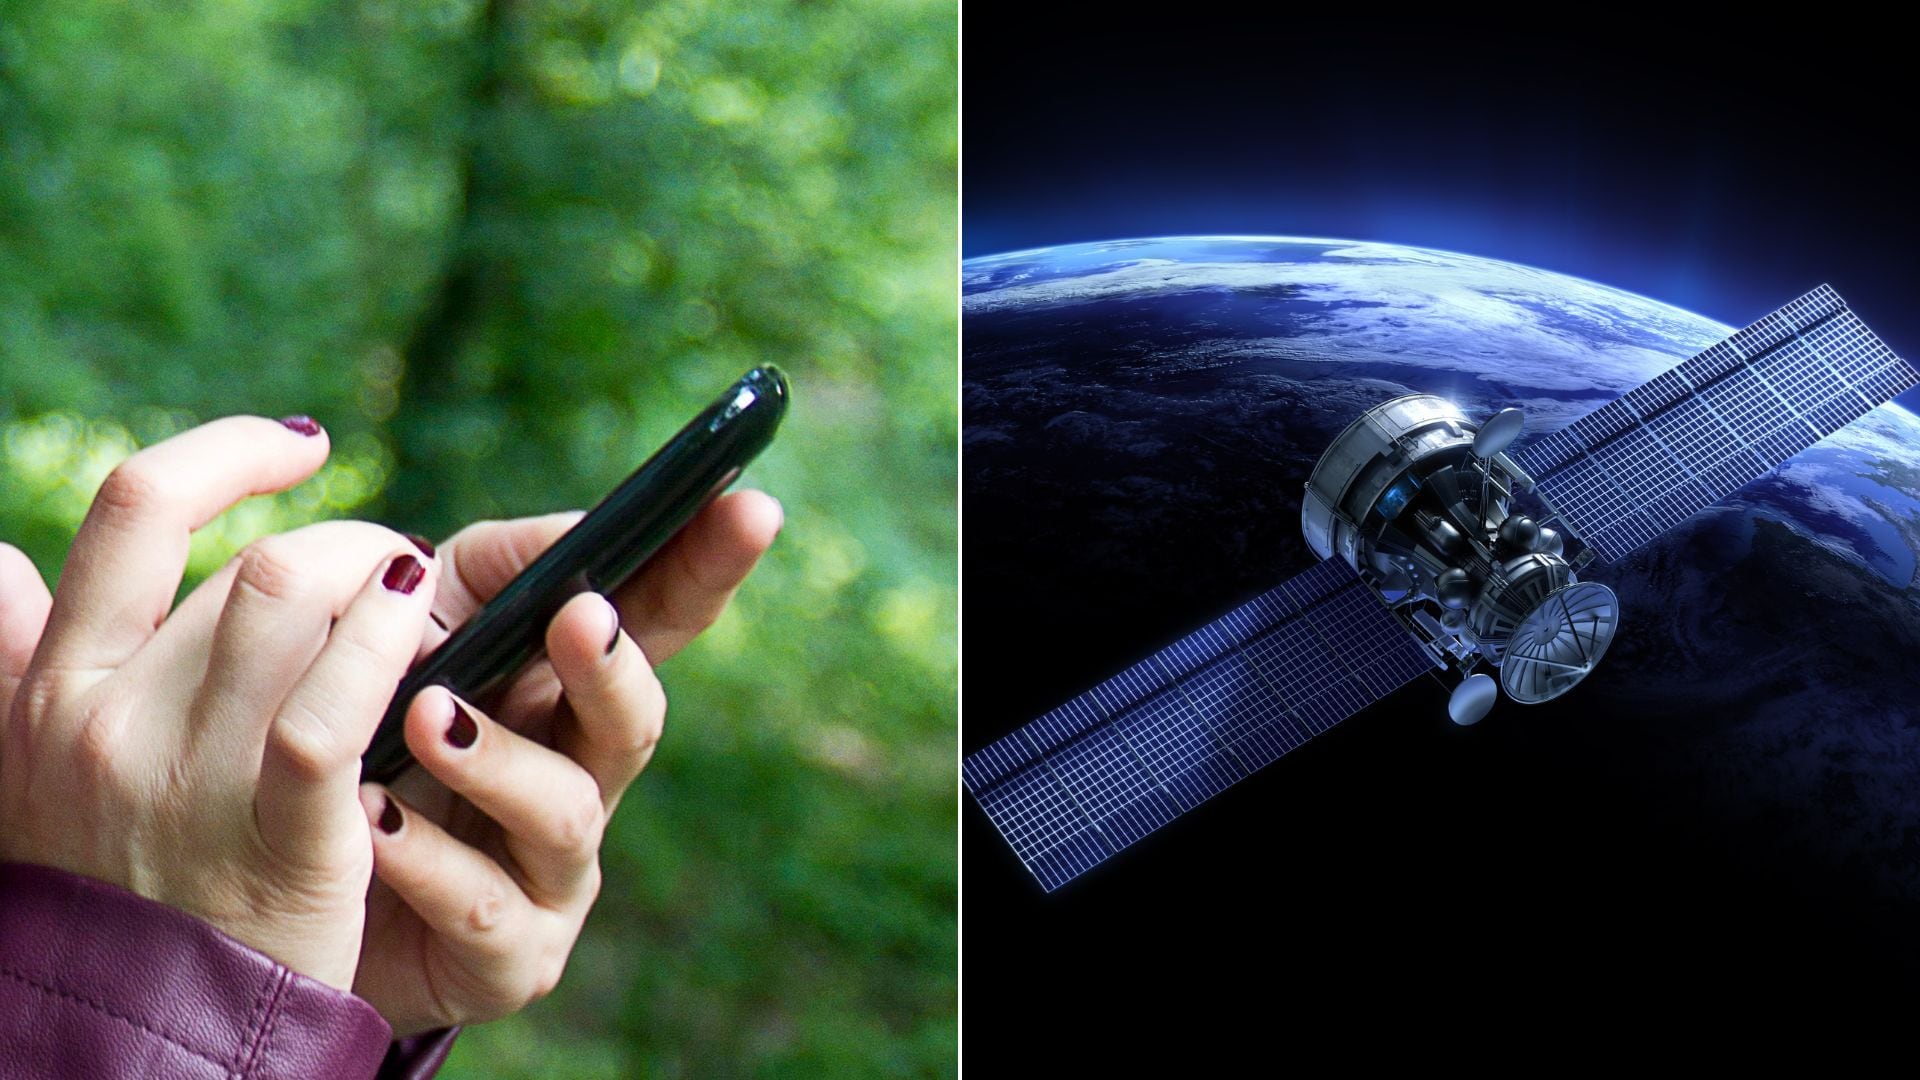 Samsung integrará comunicación satelital en sus aplicaciones para enviar mensajes sin cobertura móvil ni Internet.